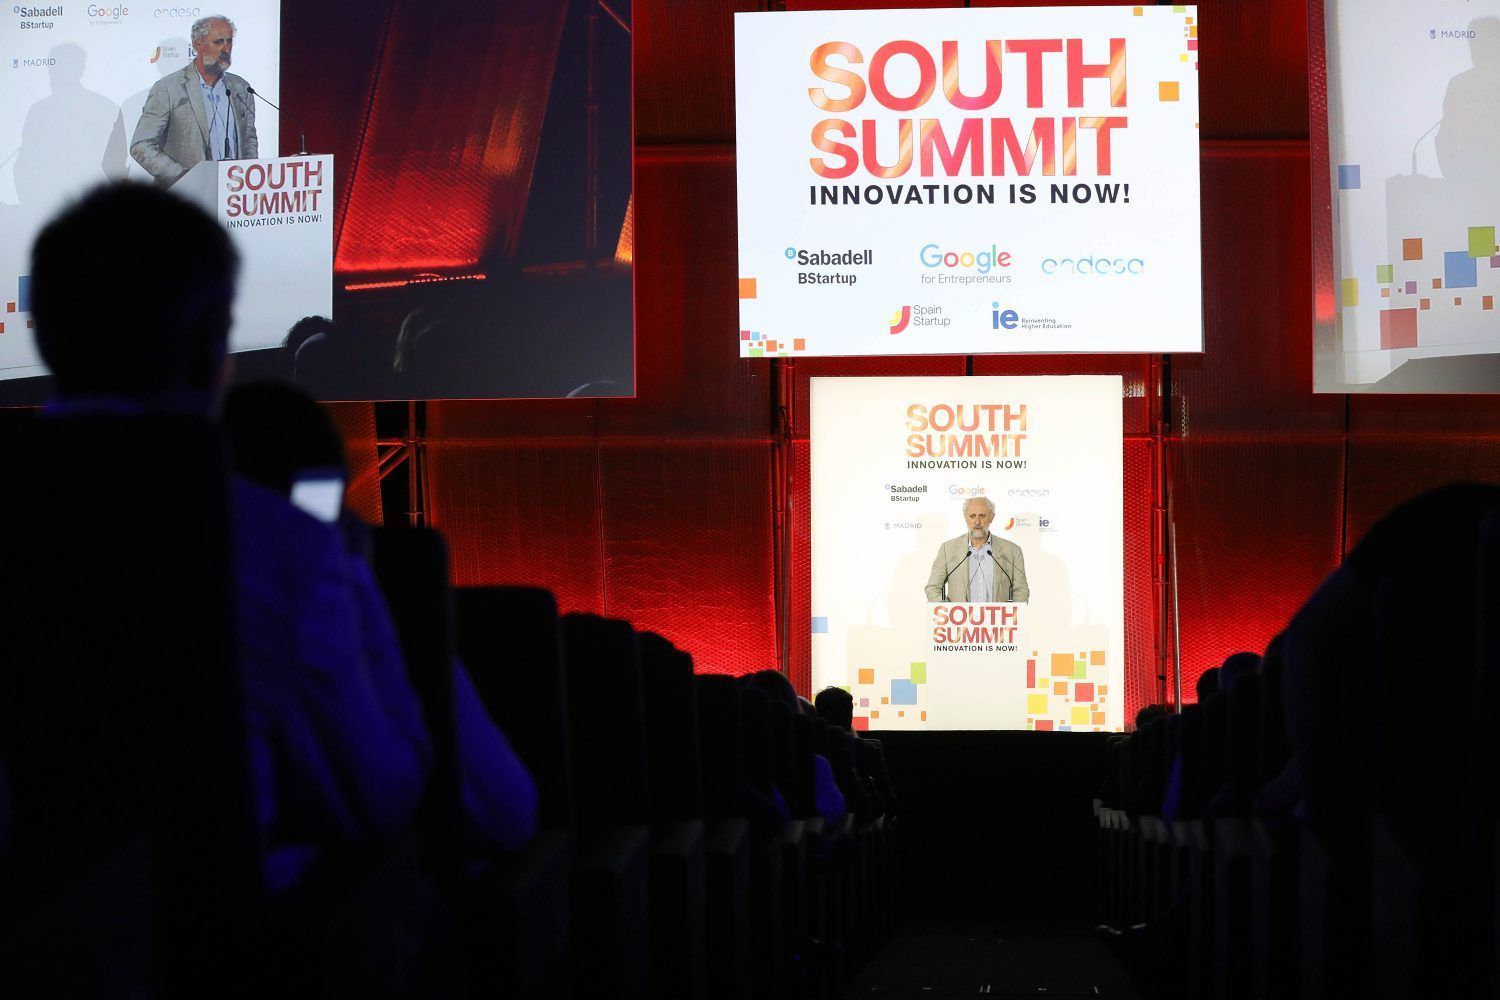 La innovación como oportunidad de negocio es el principal eje de esta edición de South Summit 2018.